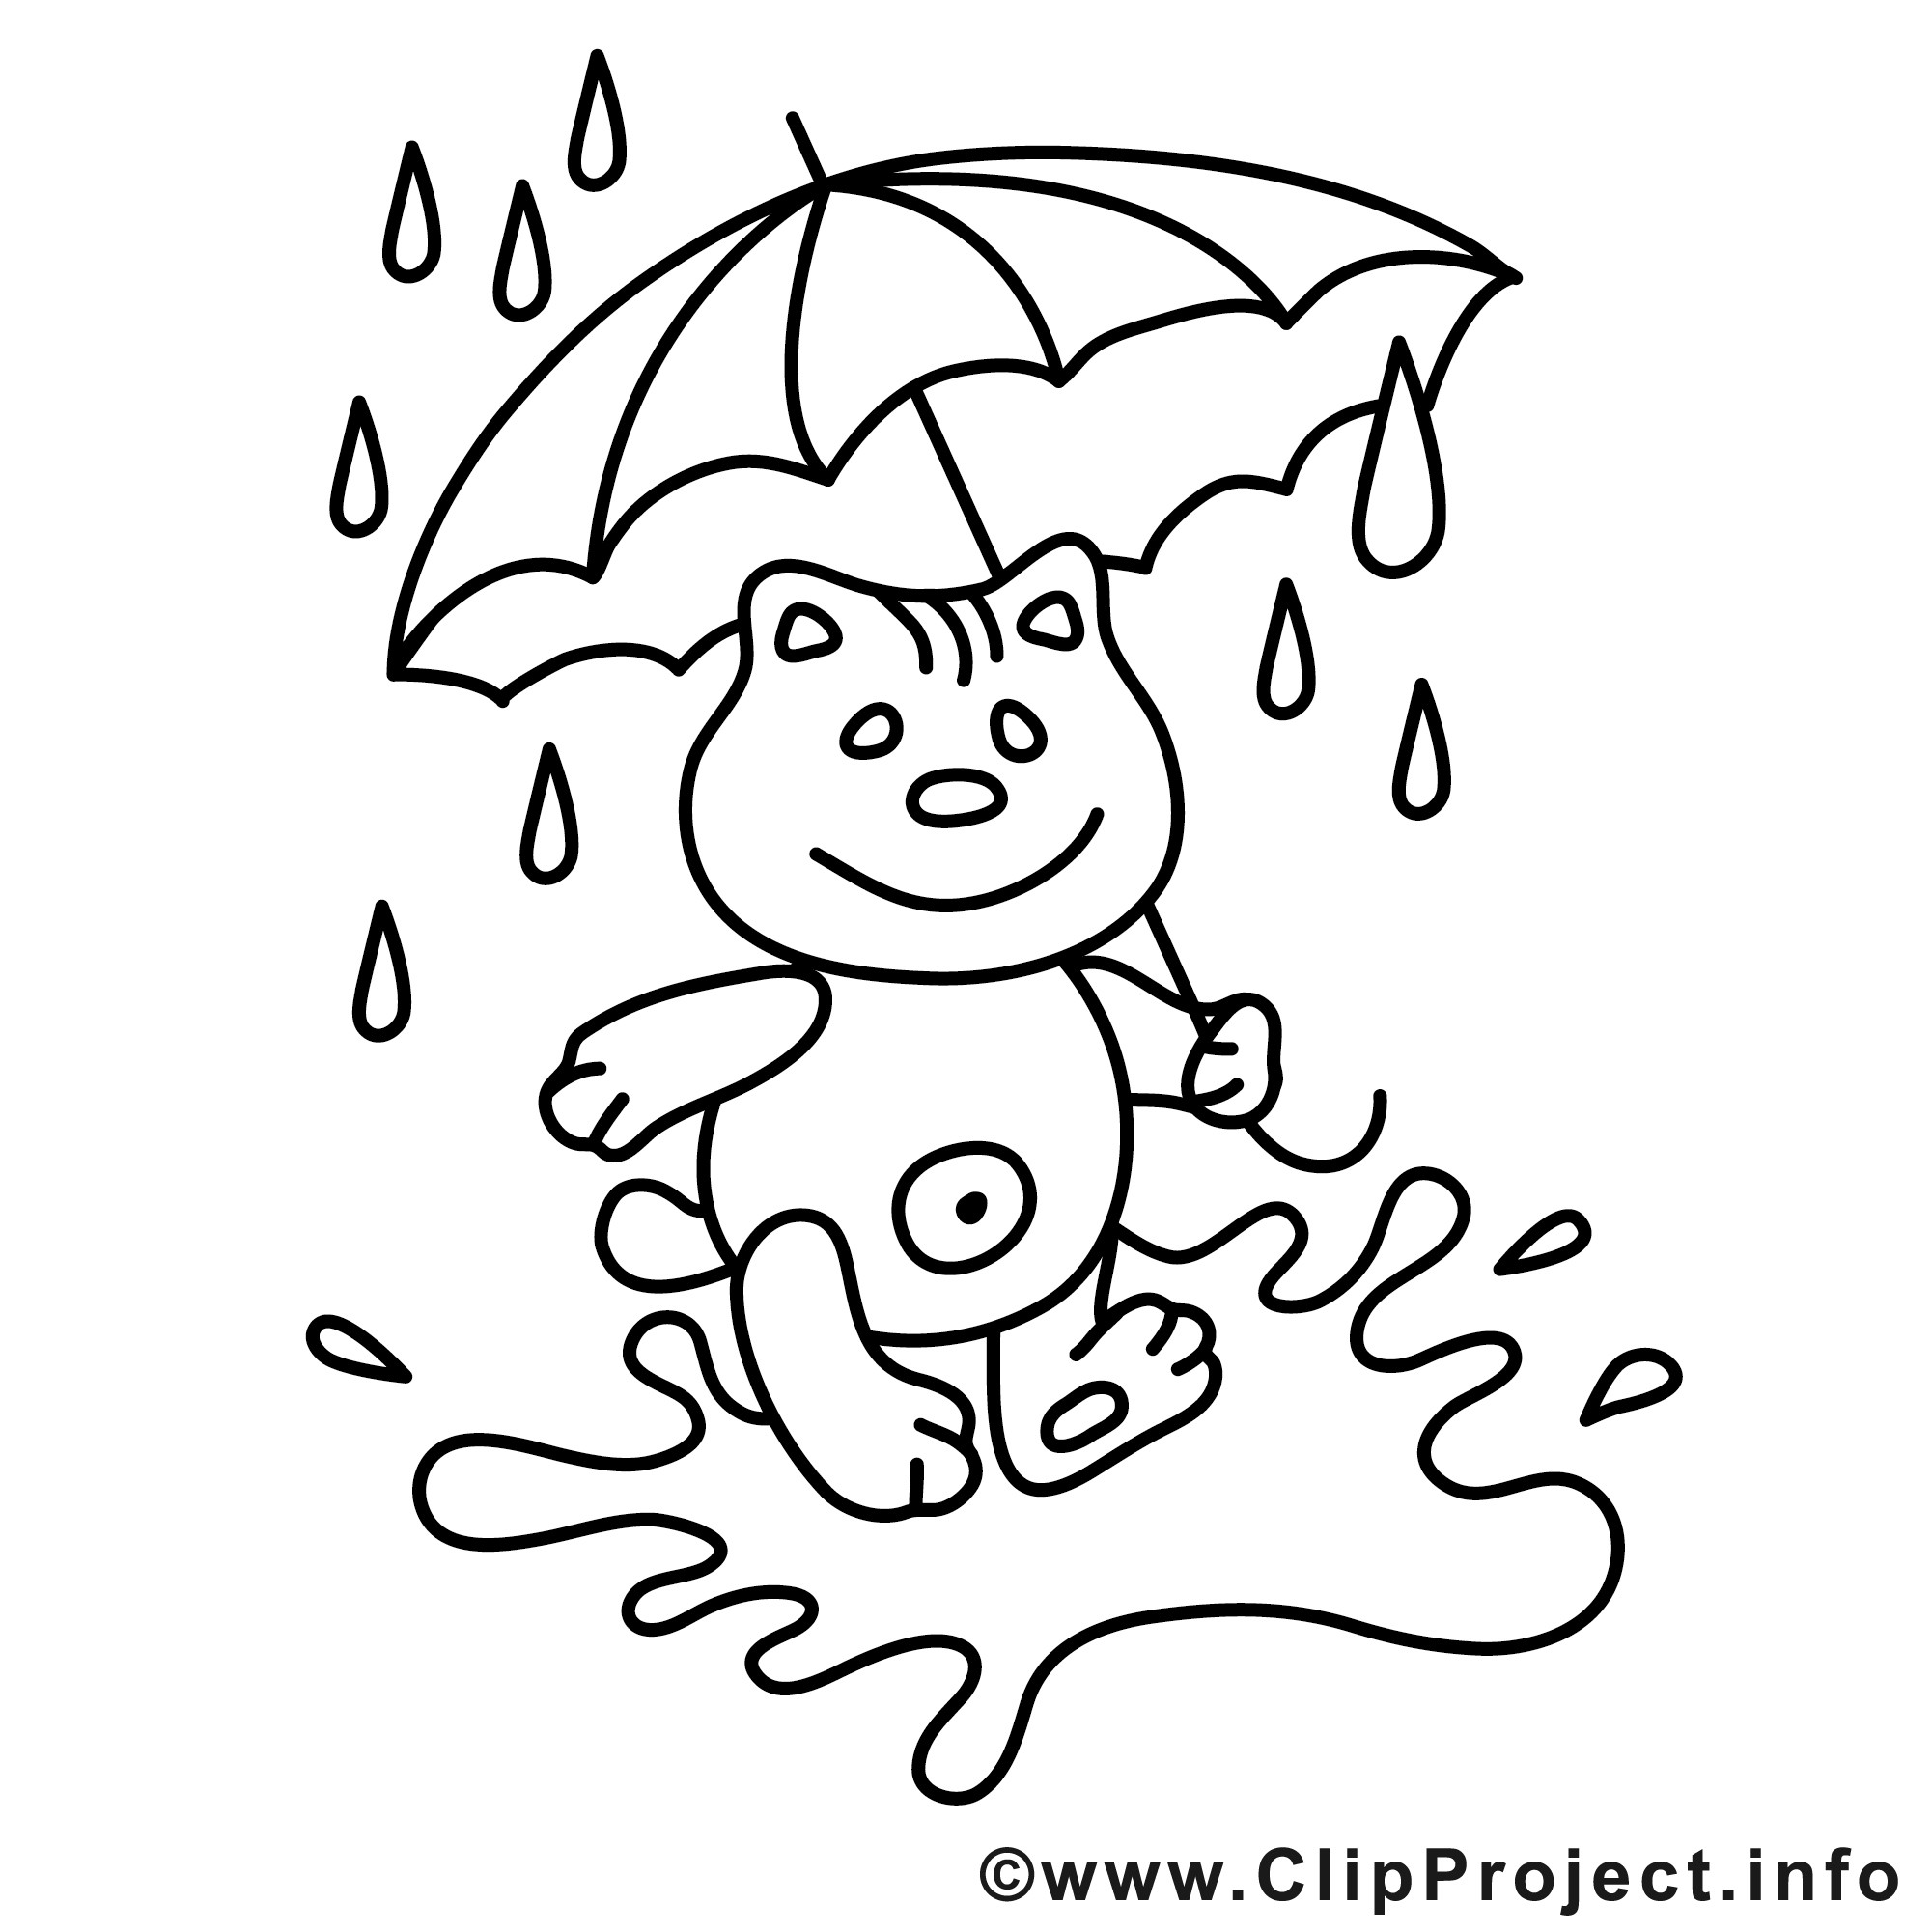 Herbst Ausmalbilder Kostenlos
 Teddy unter dem Regenschirm kostenlose Herbst Malvorlage